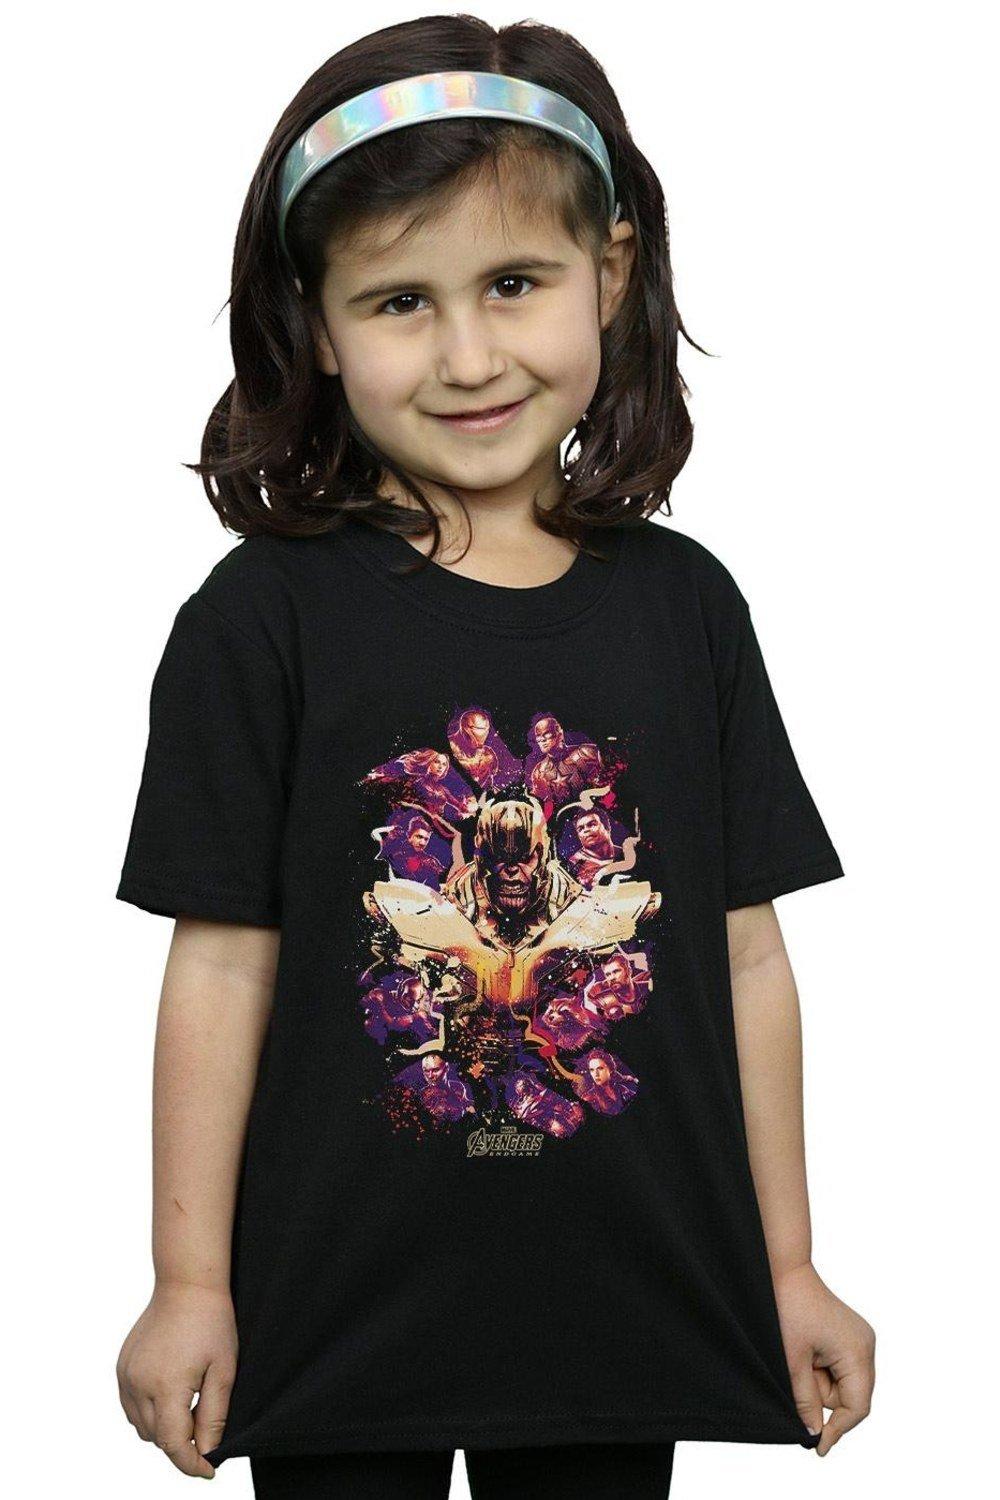 Avengers Endgame Movie Splatter Cotton T-Shirt